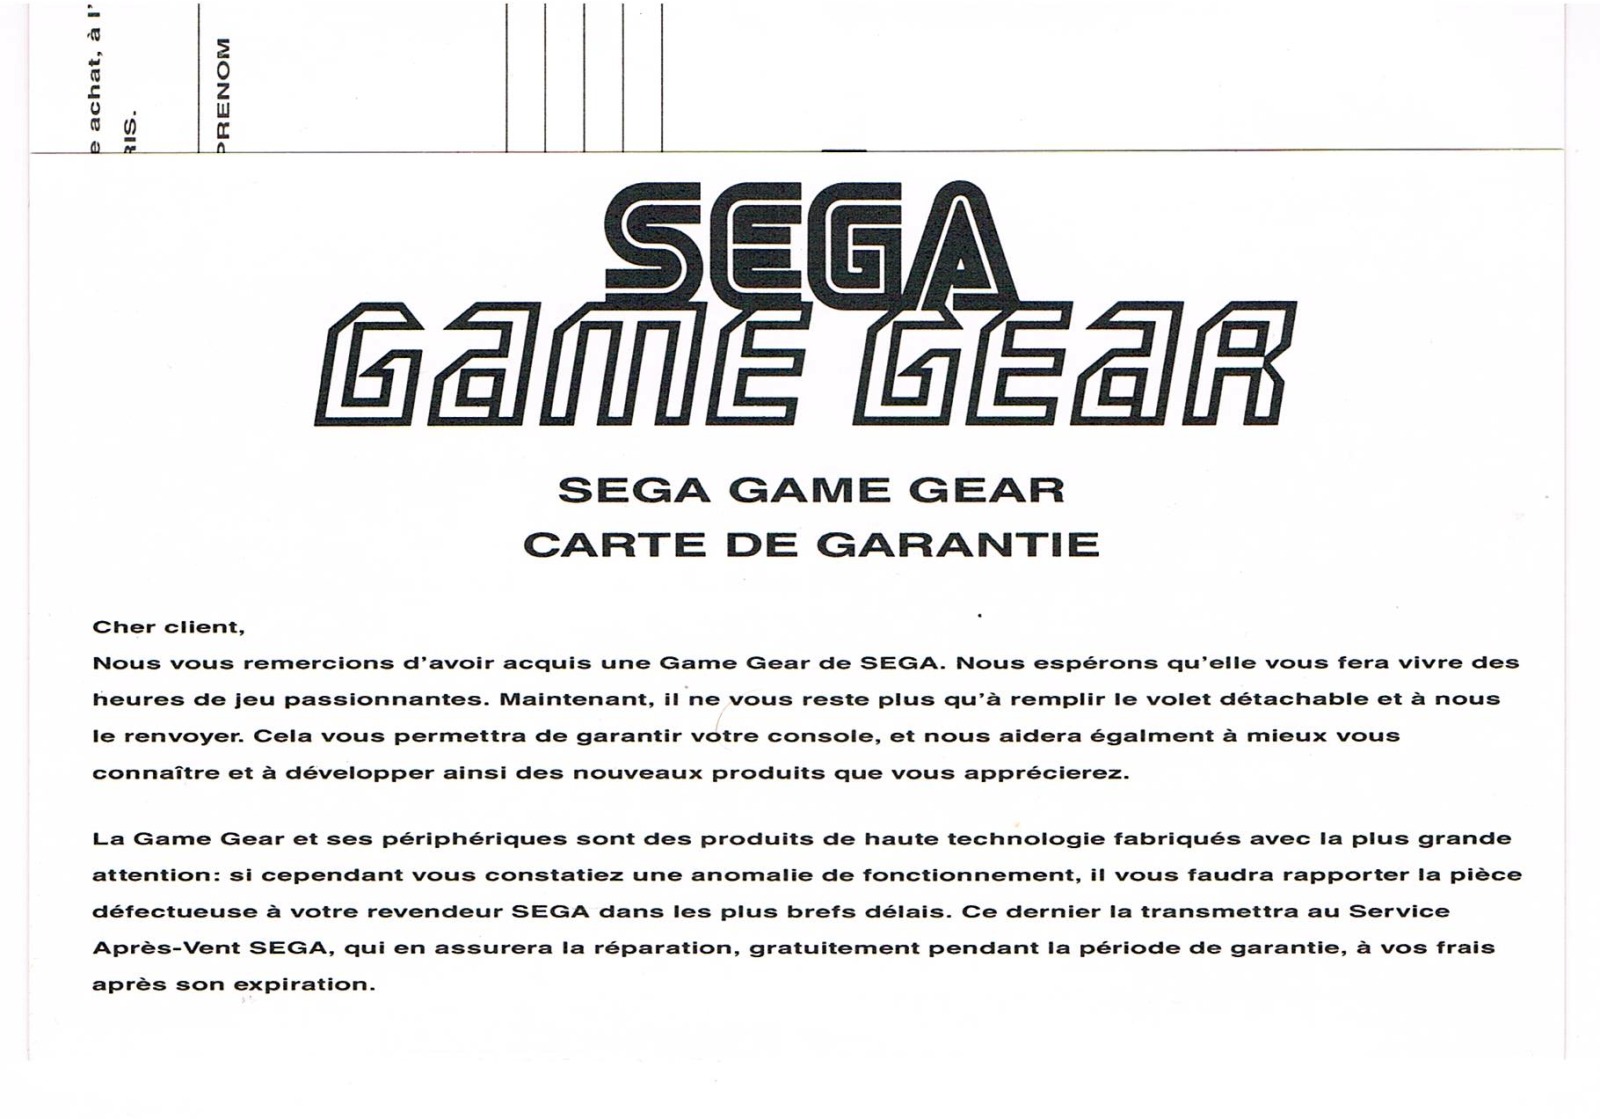 Sega Game Gear French Warranty Flyer